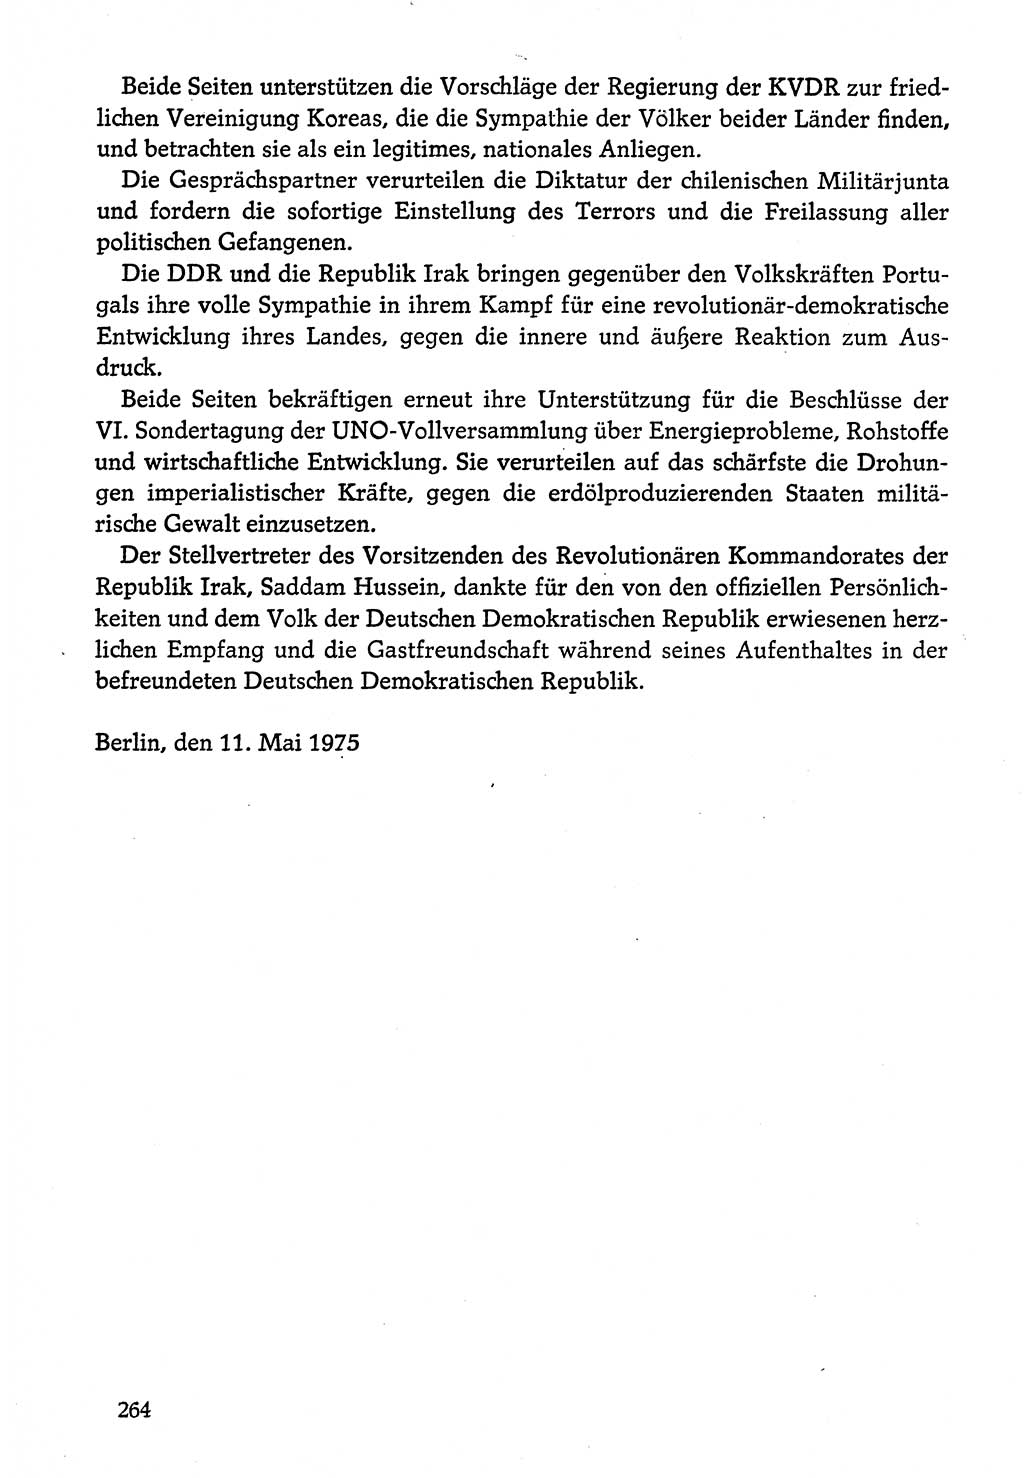 Dokumente der Sozialistischen Einheitspartei Deutschlands (SED) [Deutsche Demokratische Republik (DDR)] 1974-1975, Seite 264 (Dok. SED DDR 1978, Bd. ⅩⅤ, S. 264)